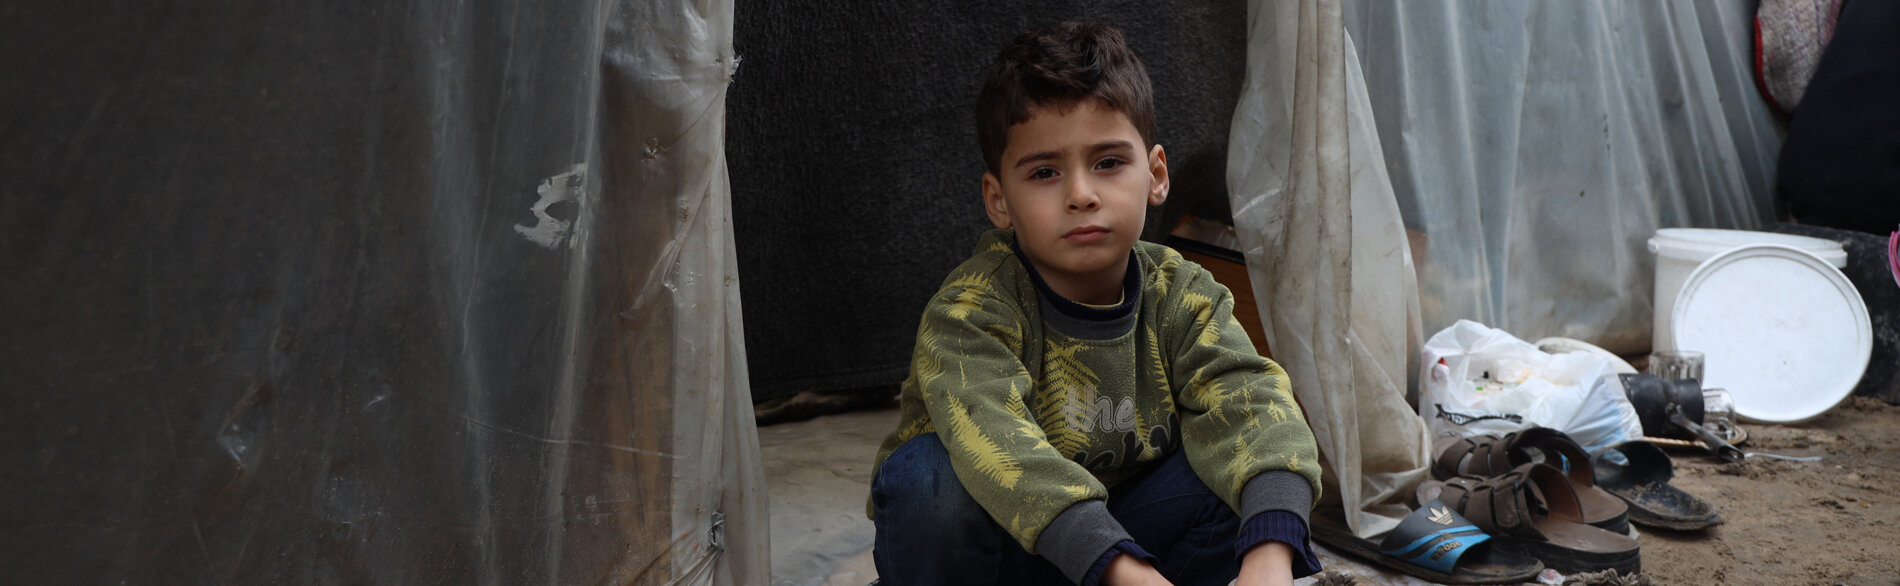 فتى فلسطيني يجلس بجوار مبنى مؤقت في منشأة تعليمية لجأت الأسر النازحة إليها في غزة. تصوير اليونيسف/البابا 